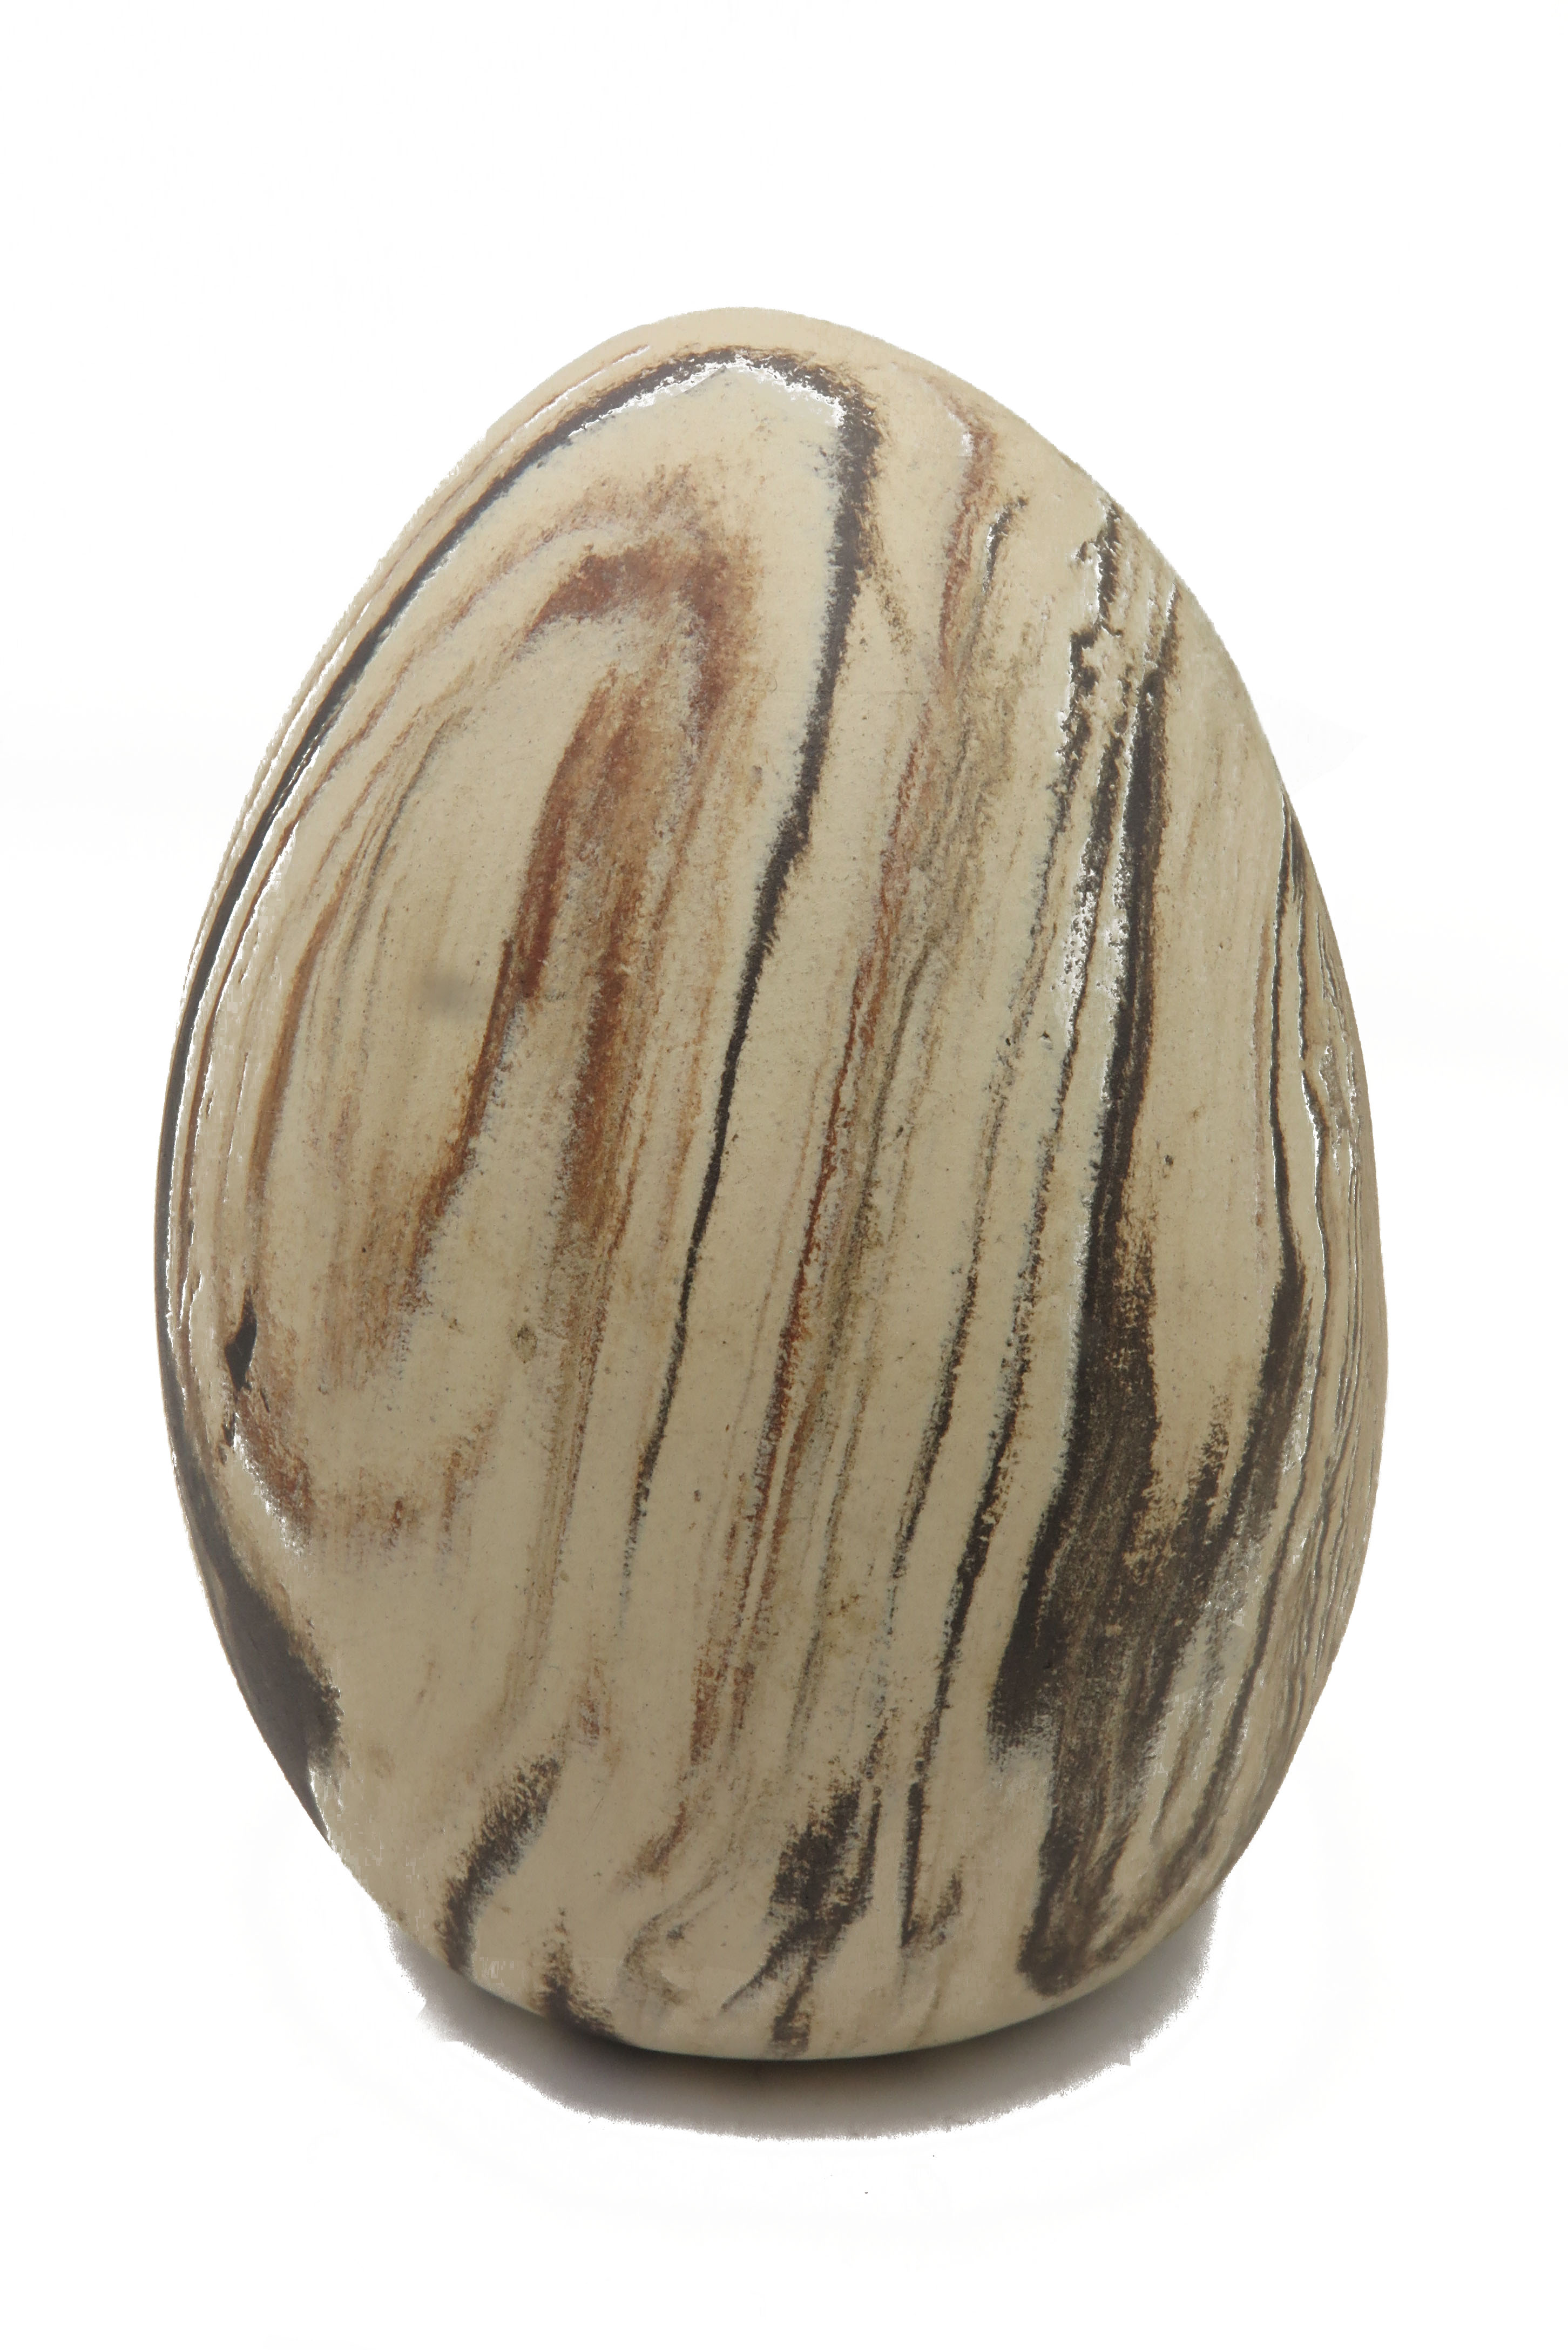  Eier wie aus Stein gehauen/ L 17 cm